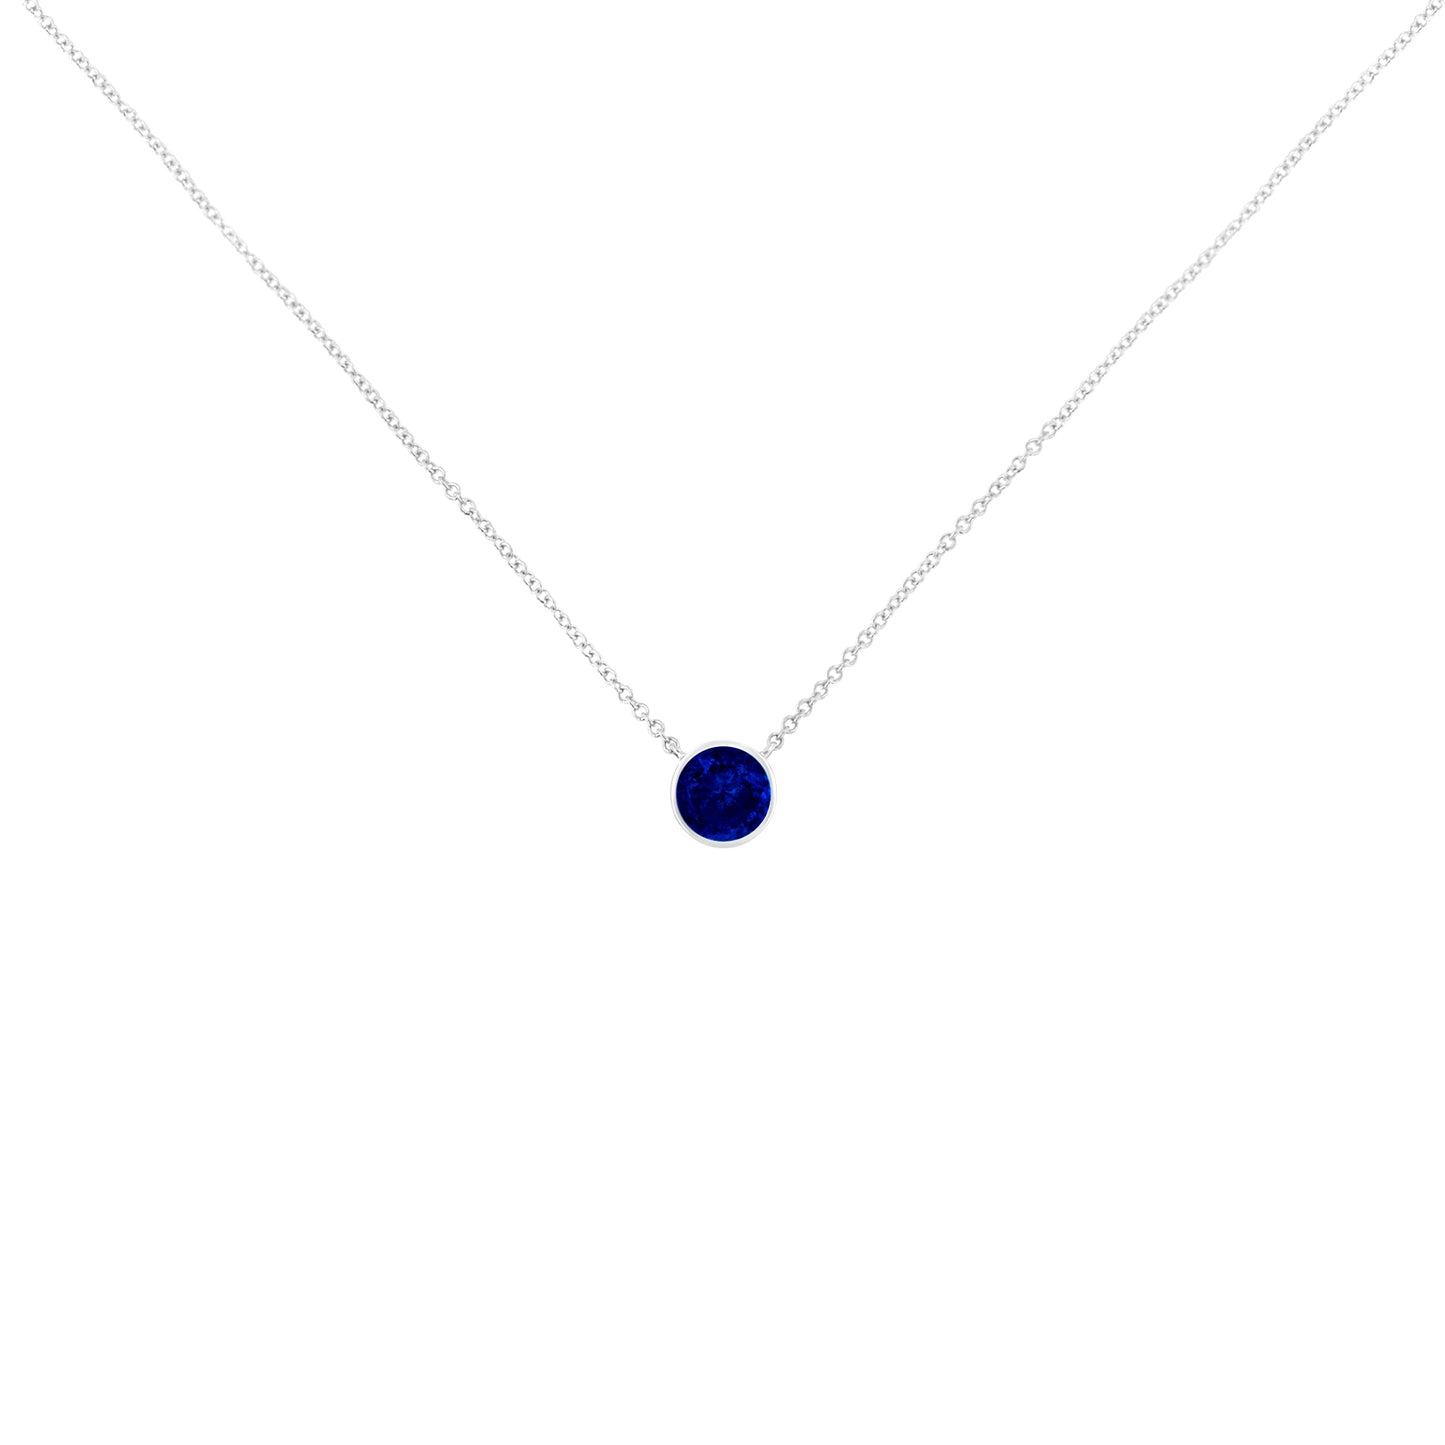 2.5mm Lab Grown Cobalt Blue Sapphire Solitaire Bezel Necklace